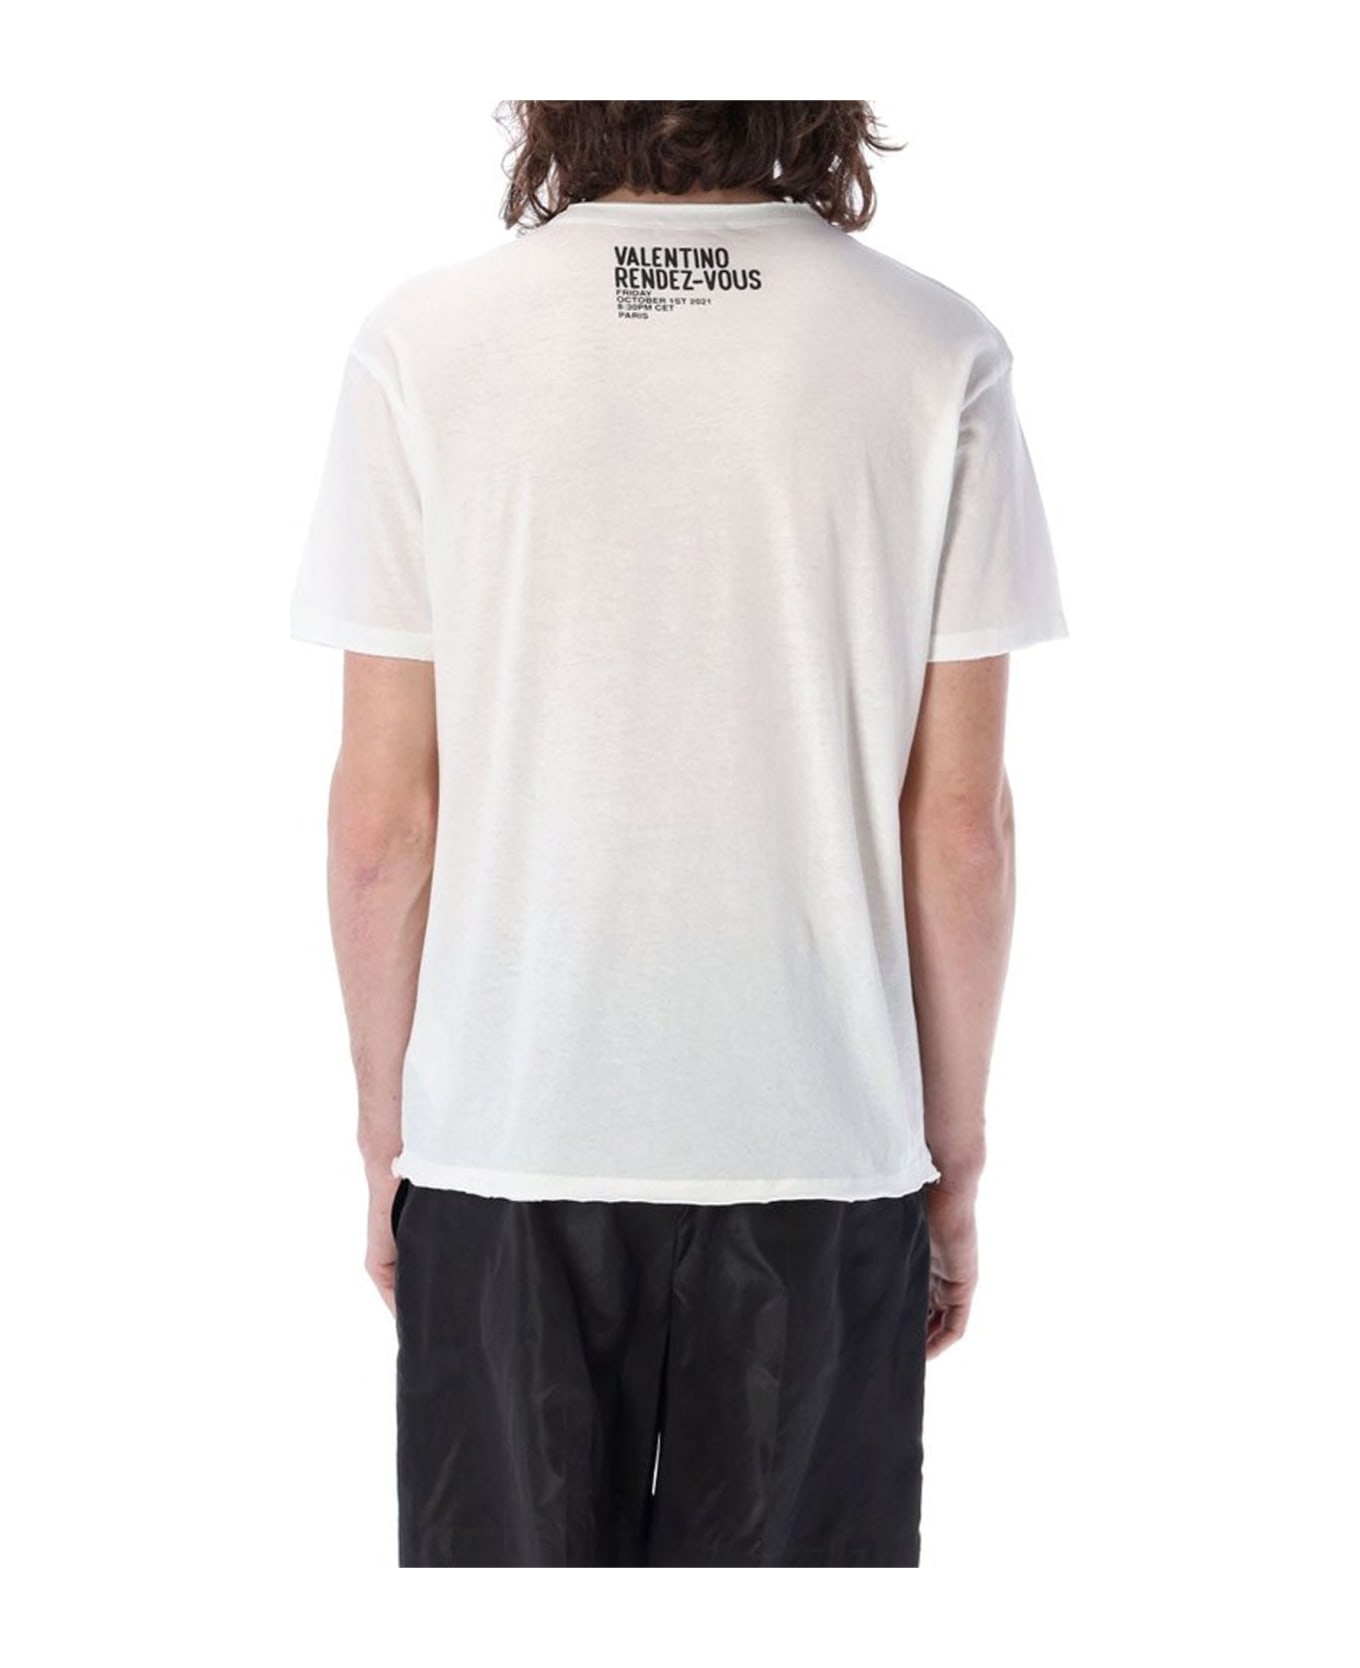 Valentino Archive Print T-shirt - White